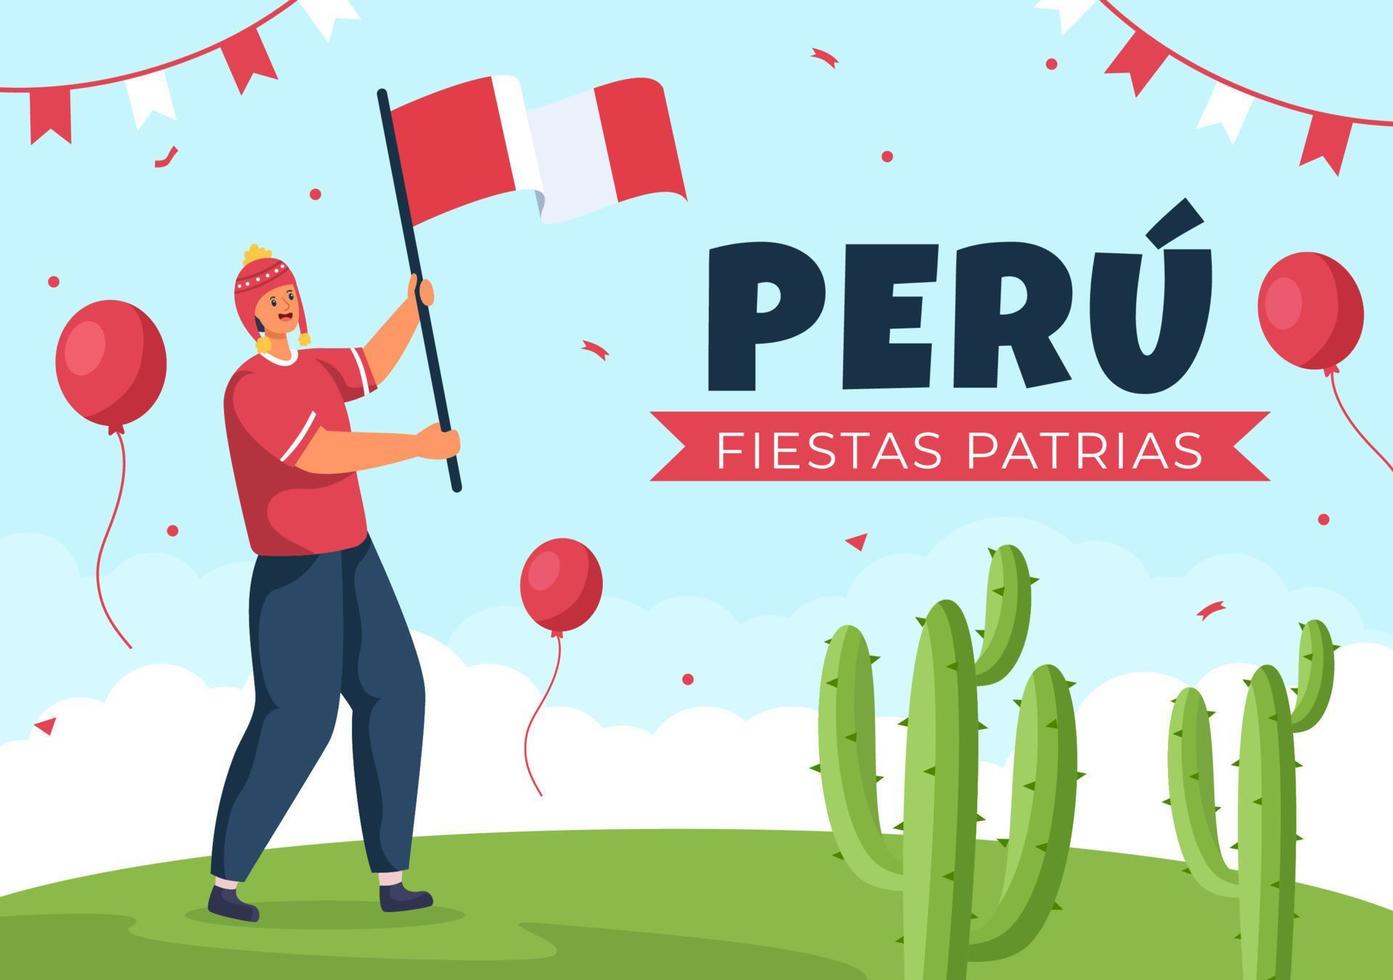 felices fiestas patrias eller peruanska självständighetsdagen tecknad illustration med flagga och söta människor för nationalhelg peru firande den 28 juli i platt stilbakgrund vektor